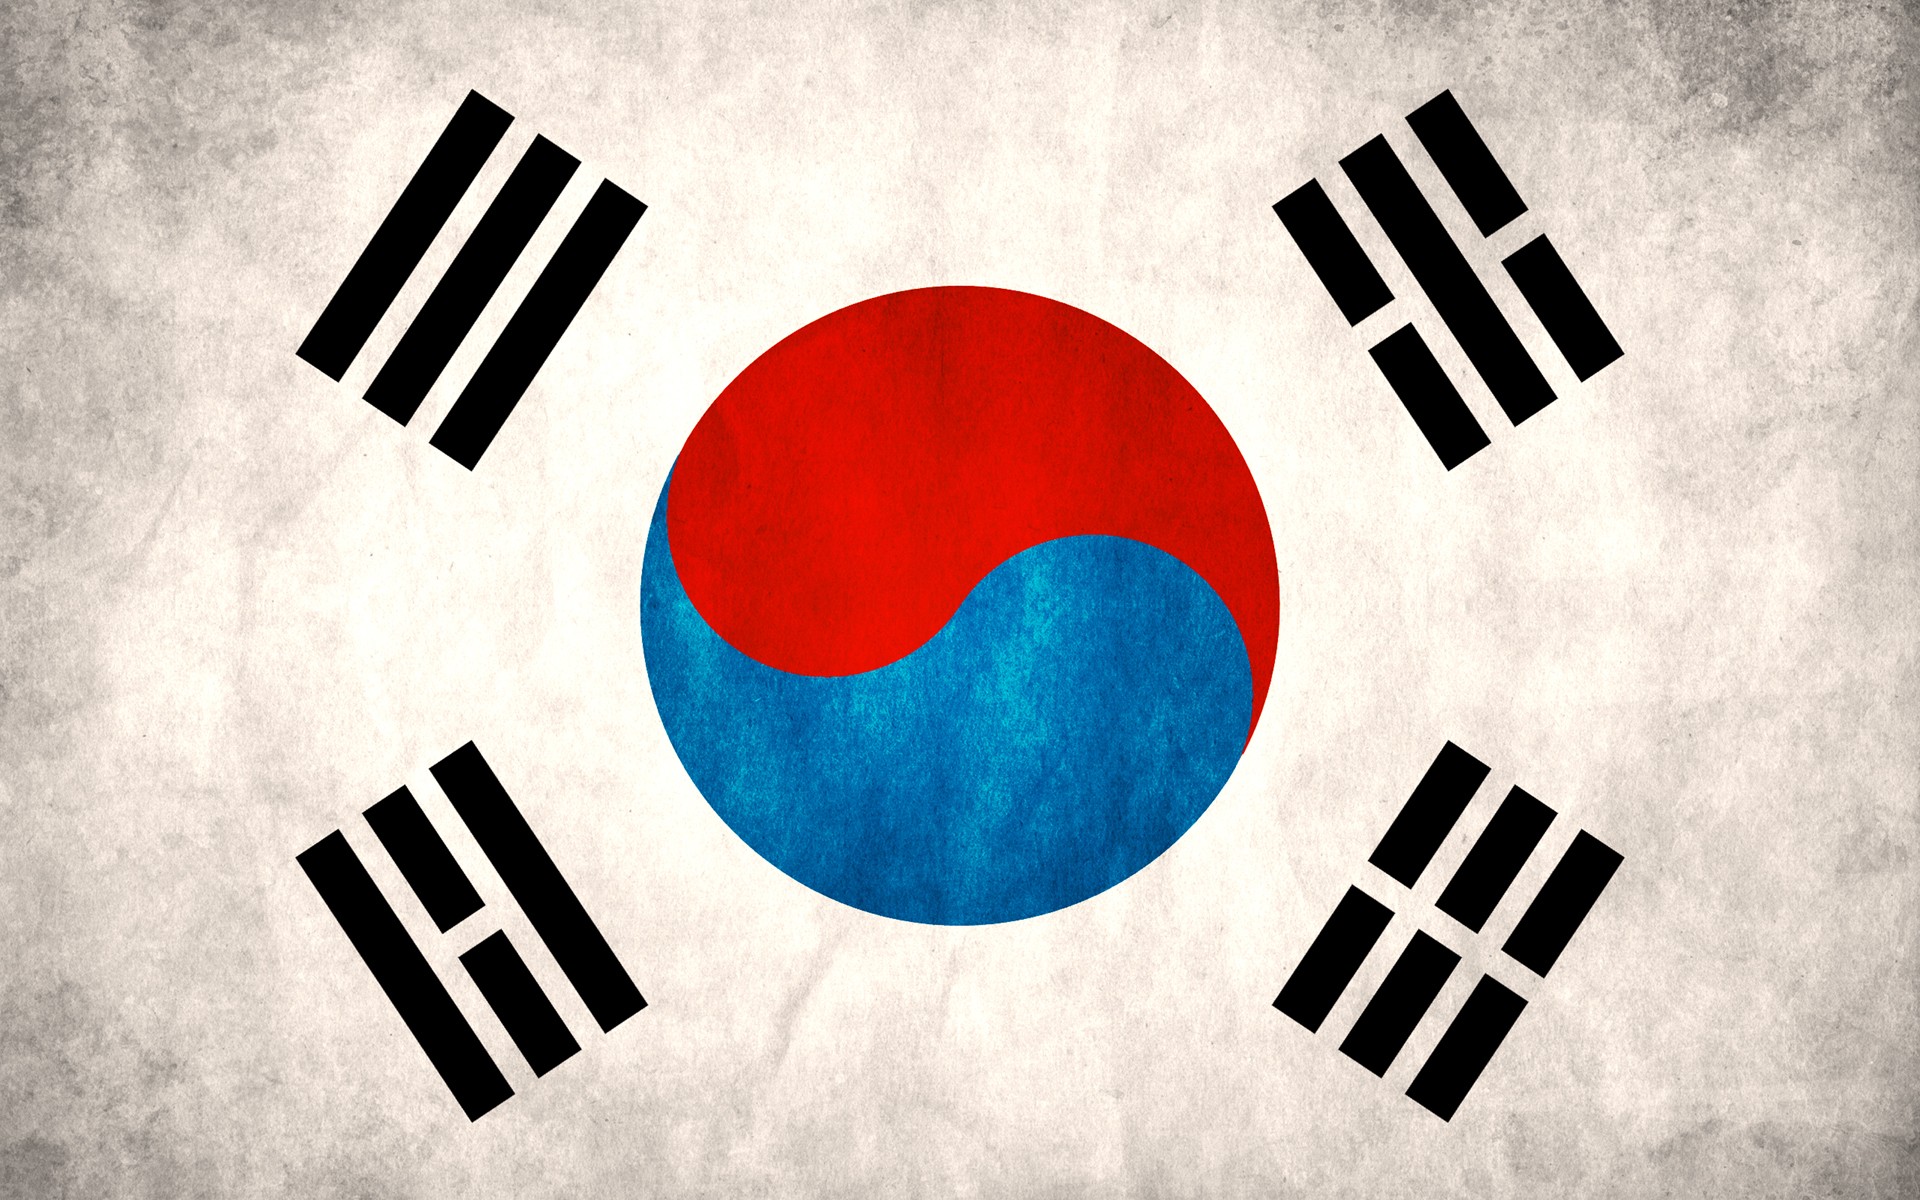 General 1920x1200 South Korea flag Korean Asia Flag of South Korea digital art